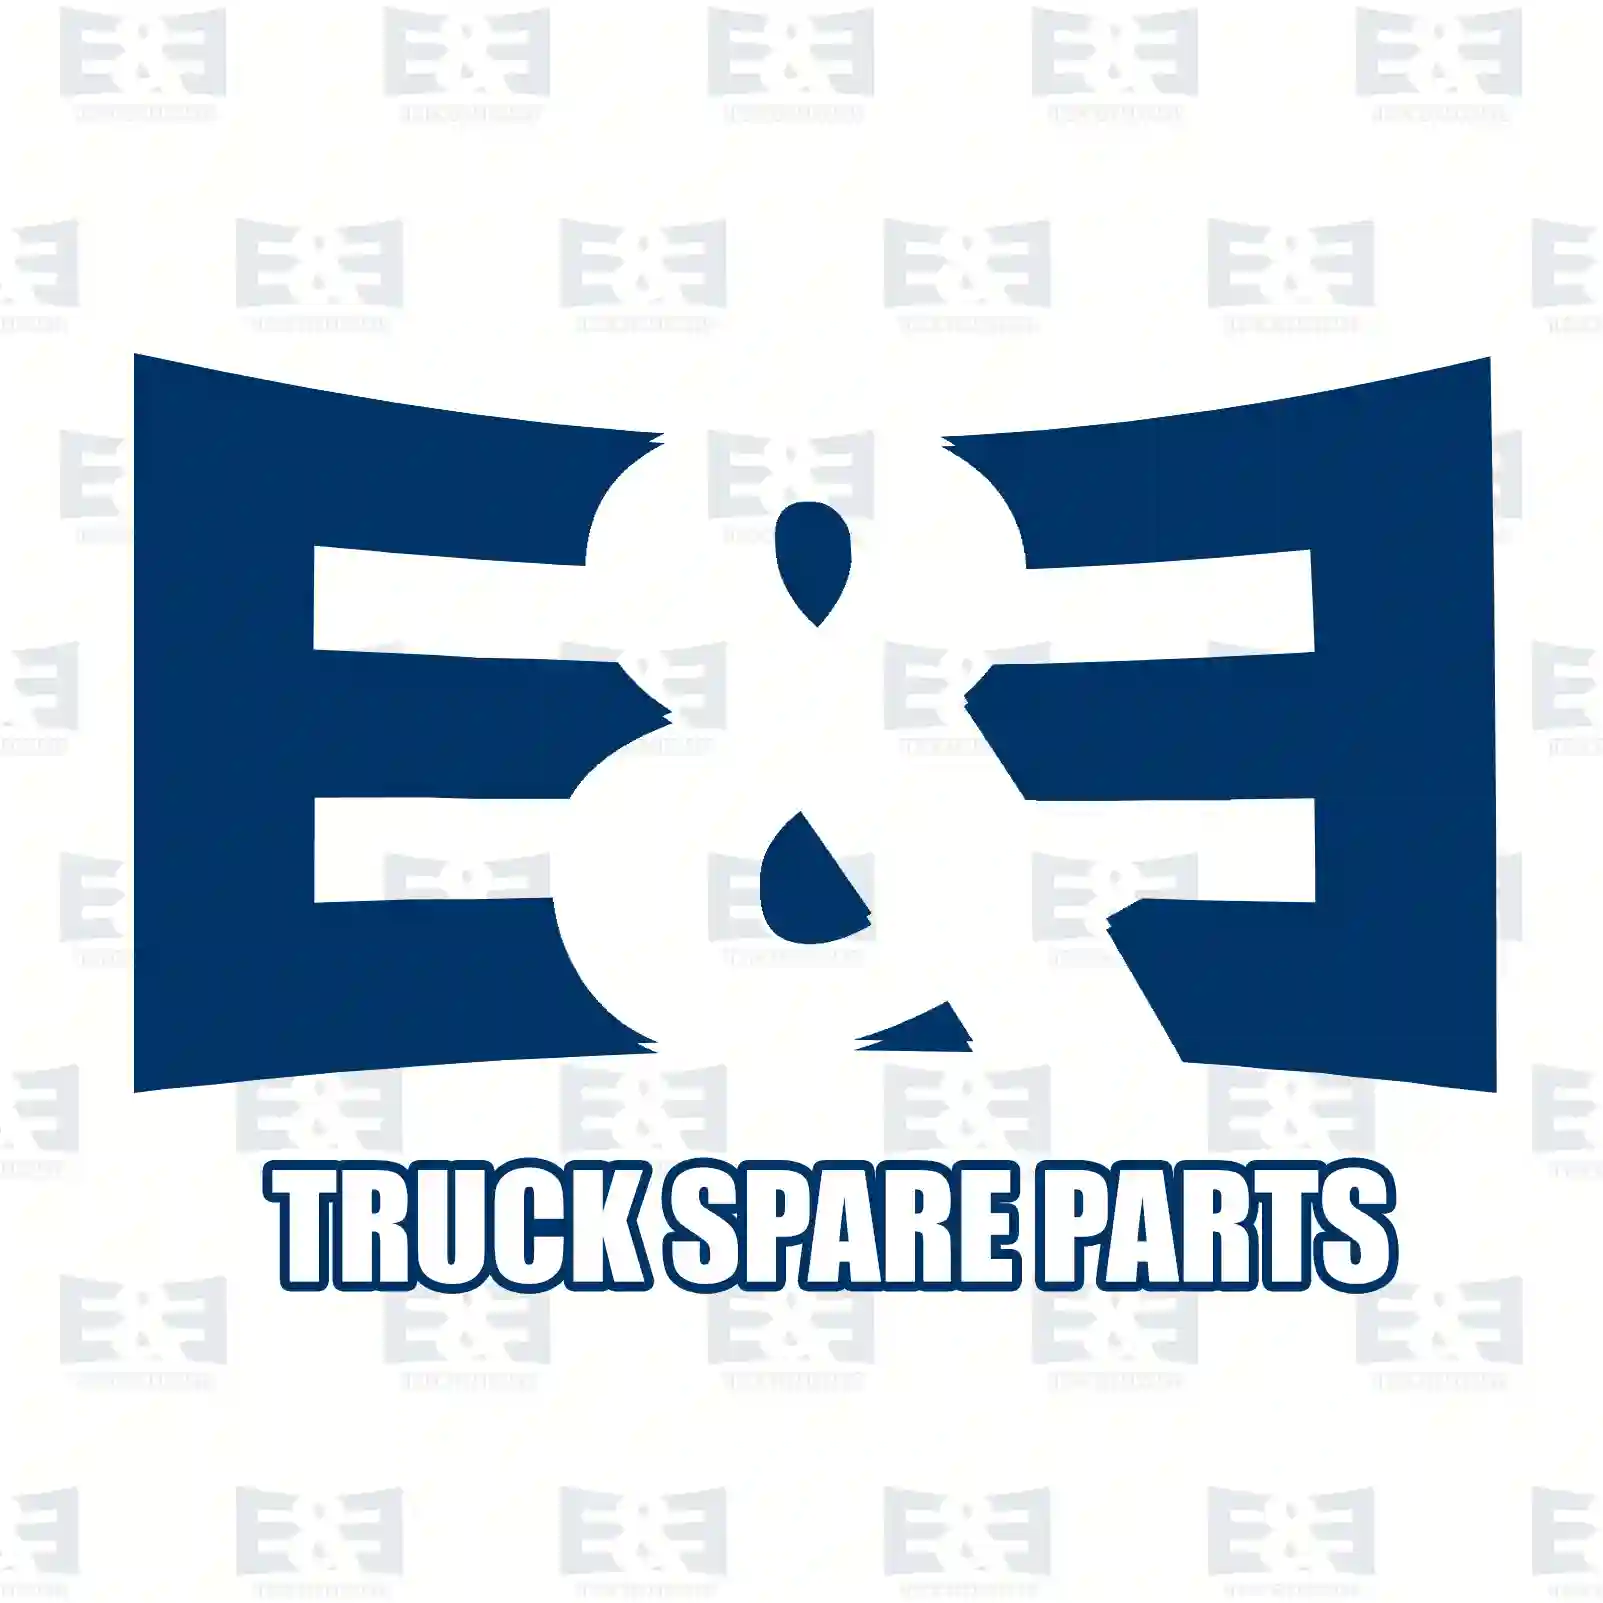 Cover, mirror arm, right, 2E2292139, 0008110461, ZG60480-0008 ||  2E2292139 E&E Truck Spare Parts | Truck Spare Parts, Auotomotive Spare Parts Cover, mirror arm, right, 2E2292139, 0008110461, ZG60480-0008 ||  2E2292139 E&E Truck Spare Parts | Truck Spare Parts, Auotomotive Spare Parts